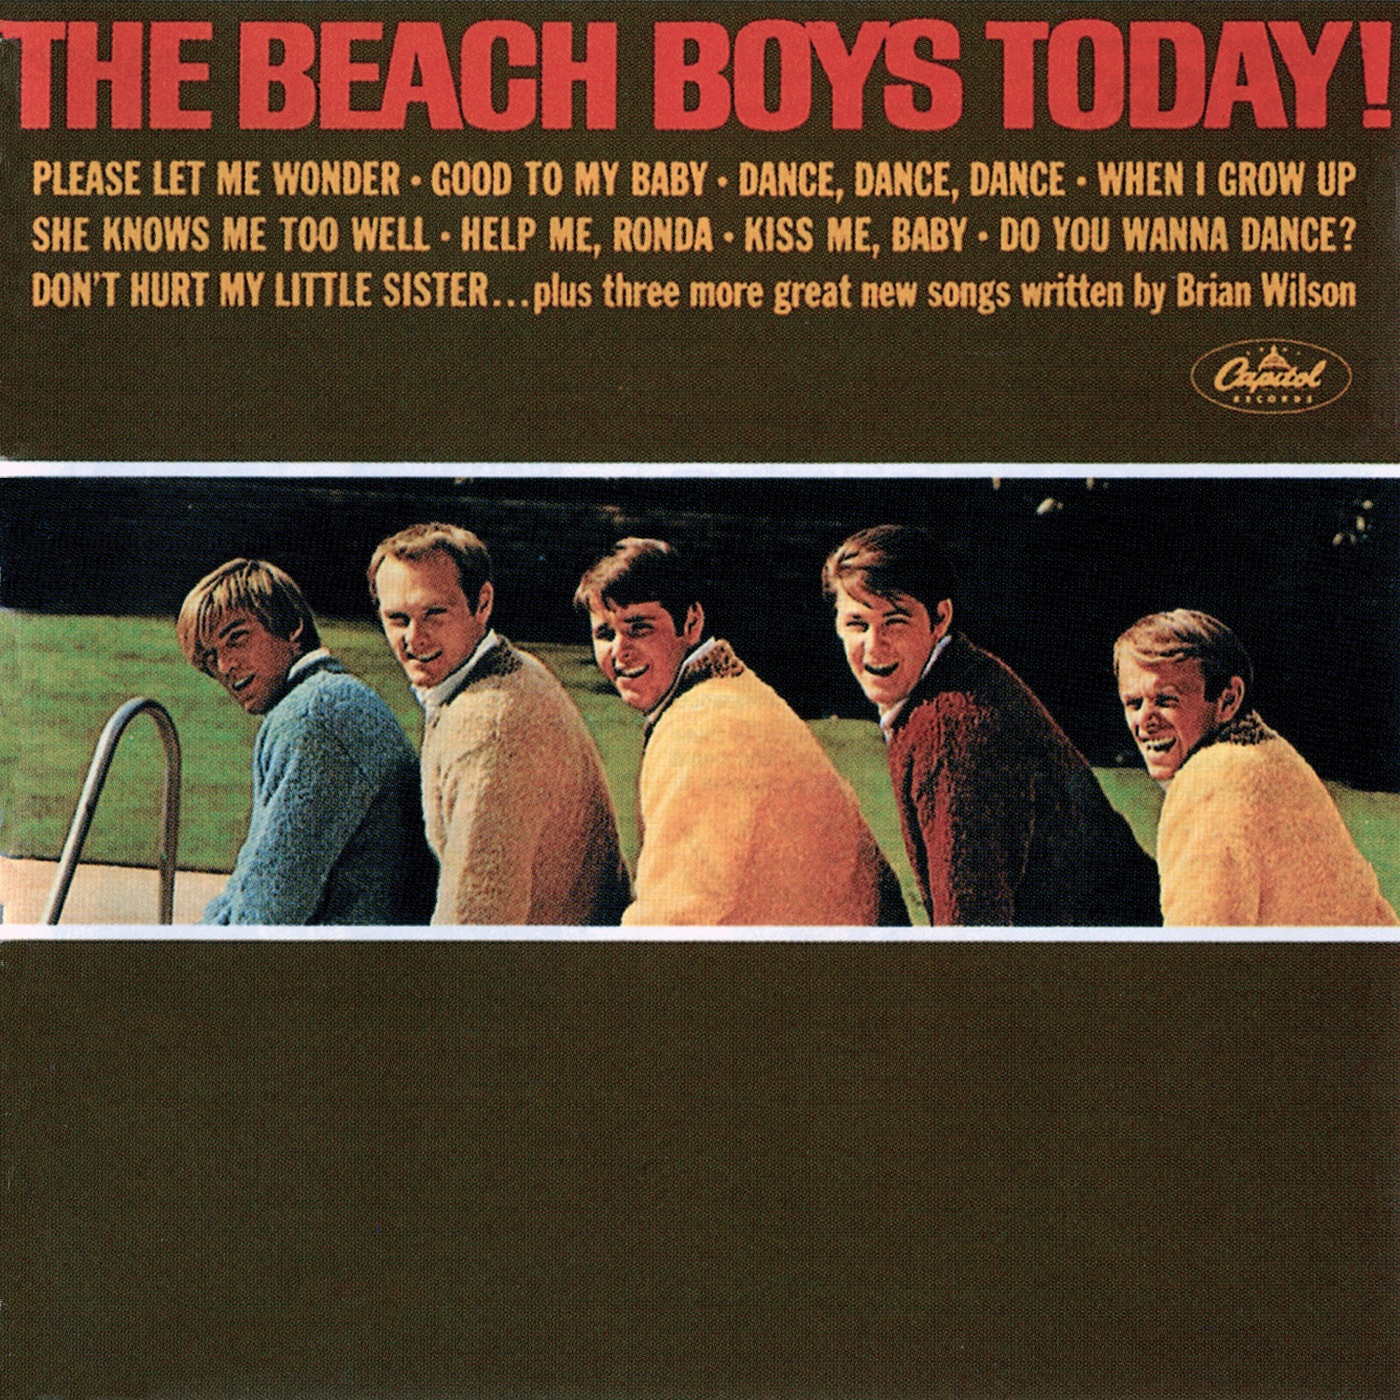 The Beach Boys Today! by The Beach Boys